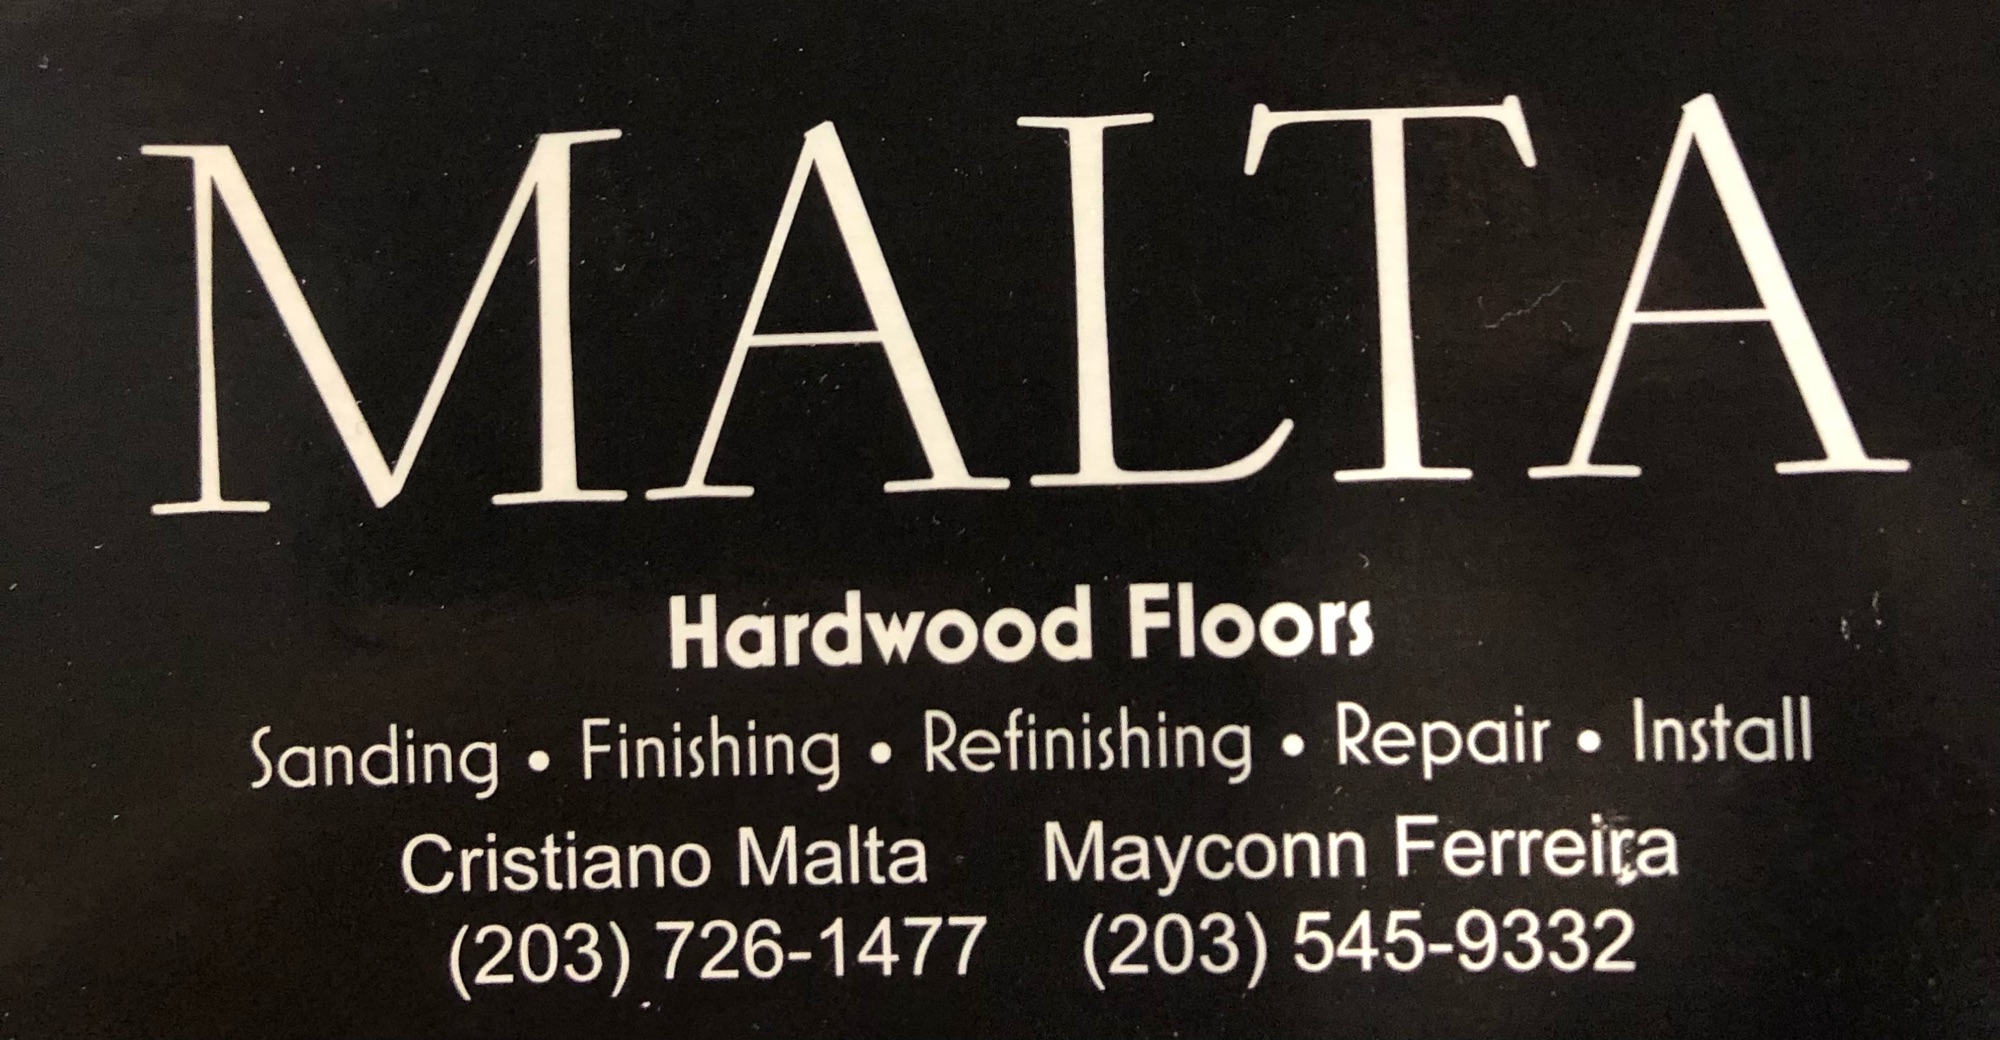 Malta Hardwood Floors Logo